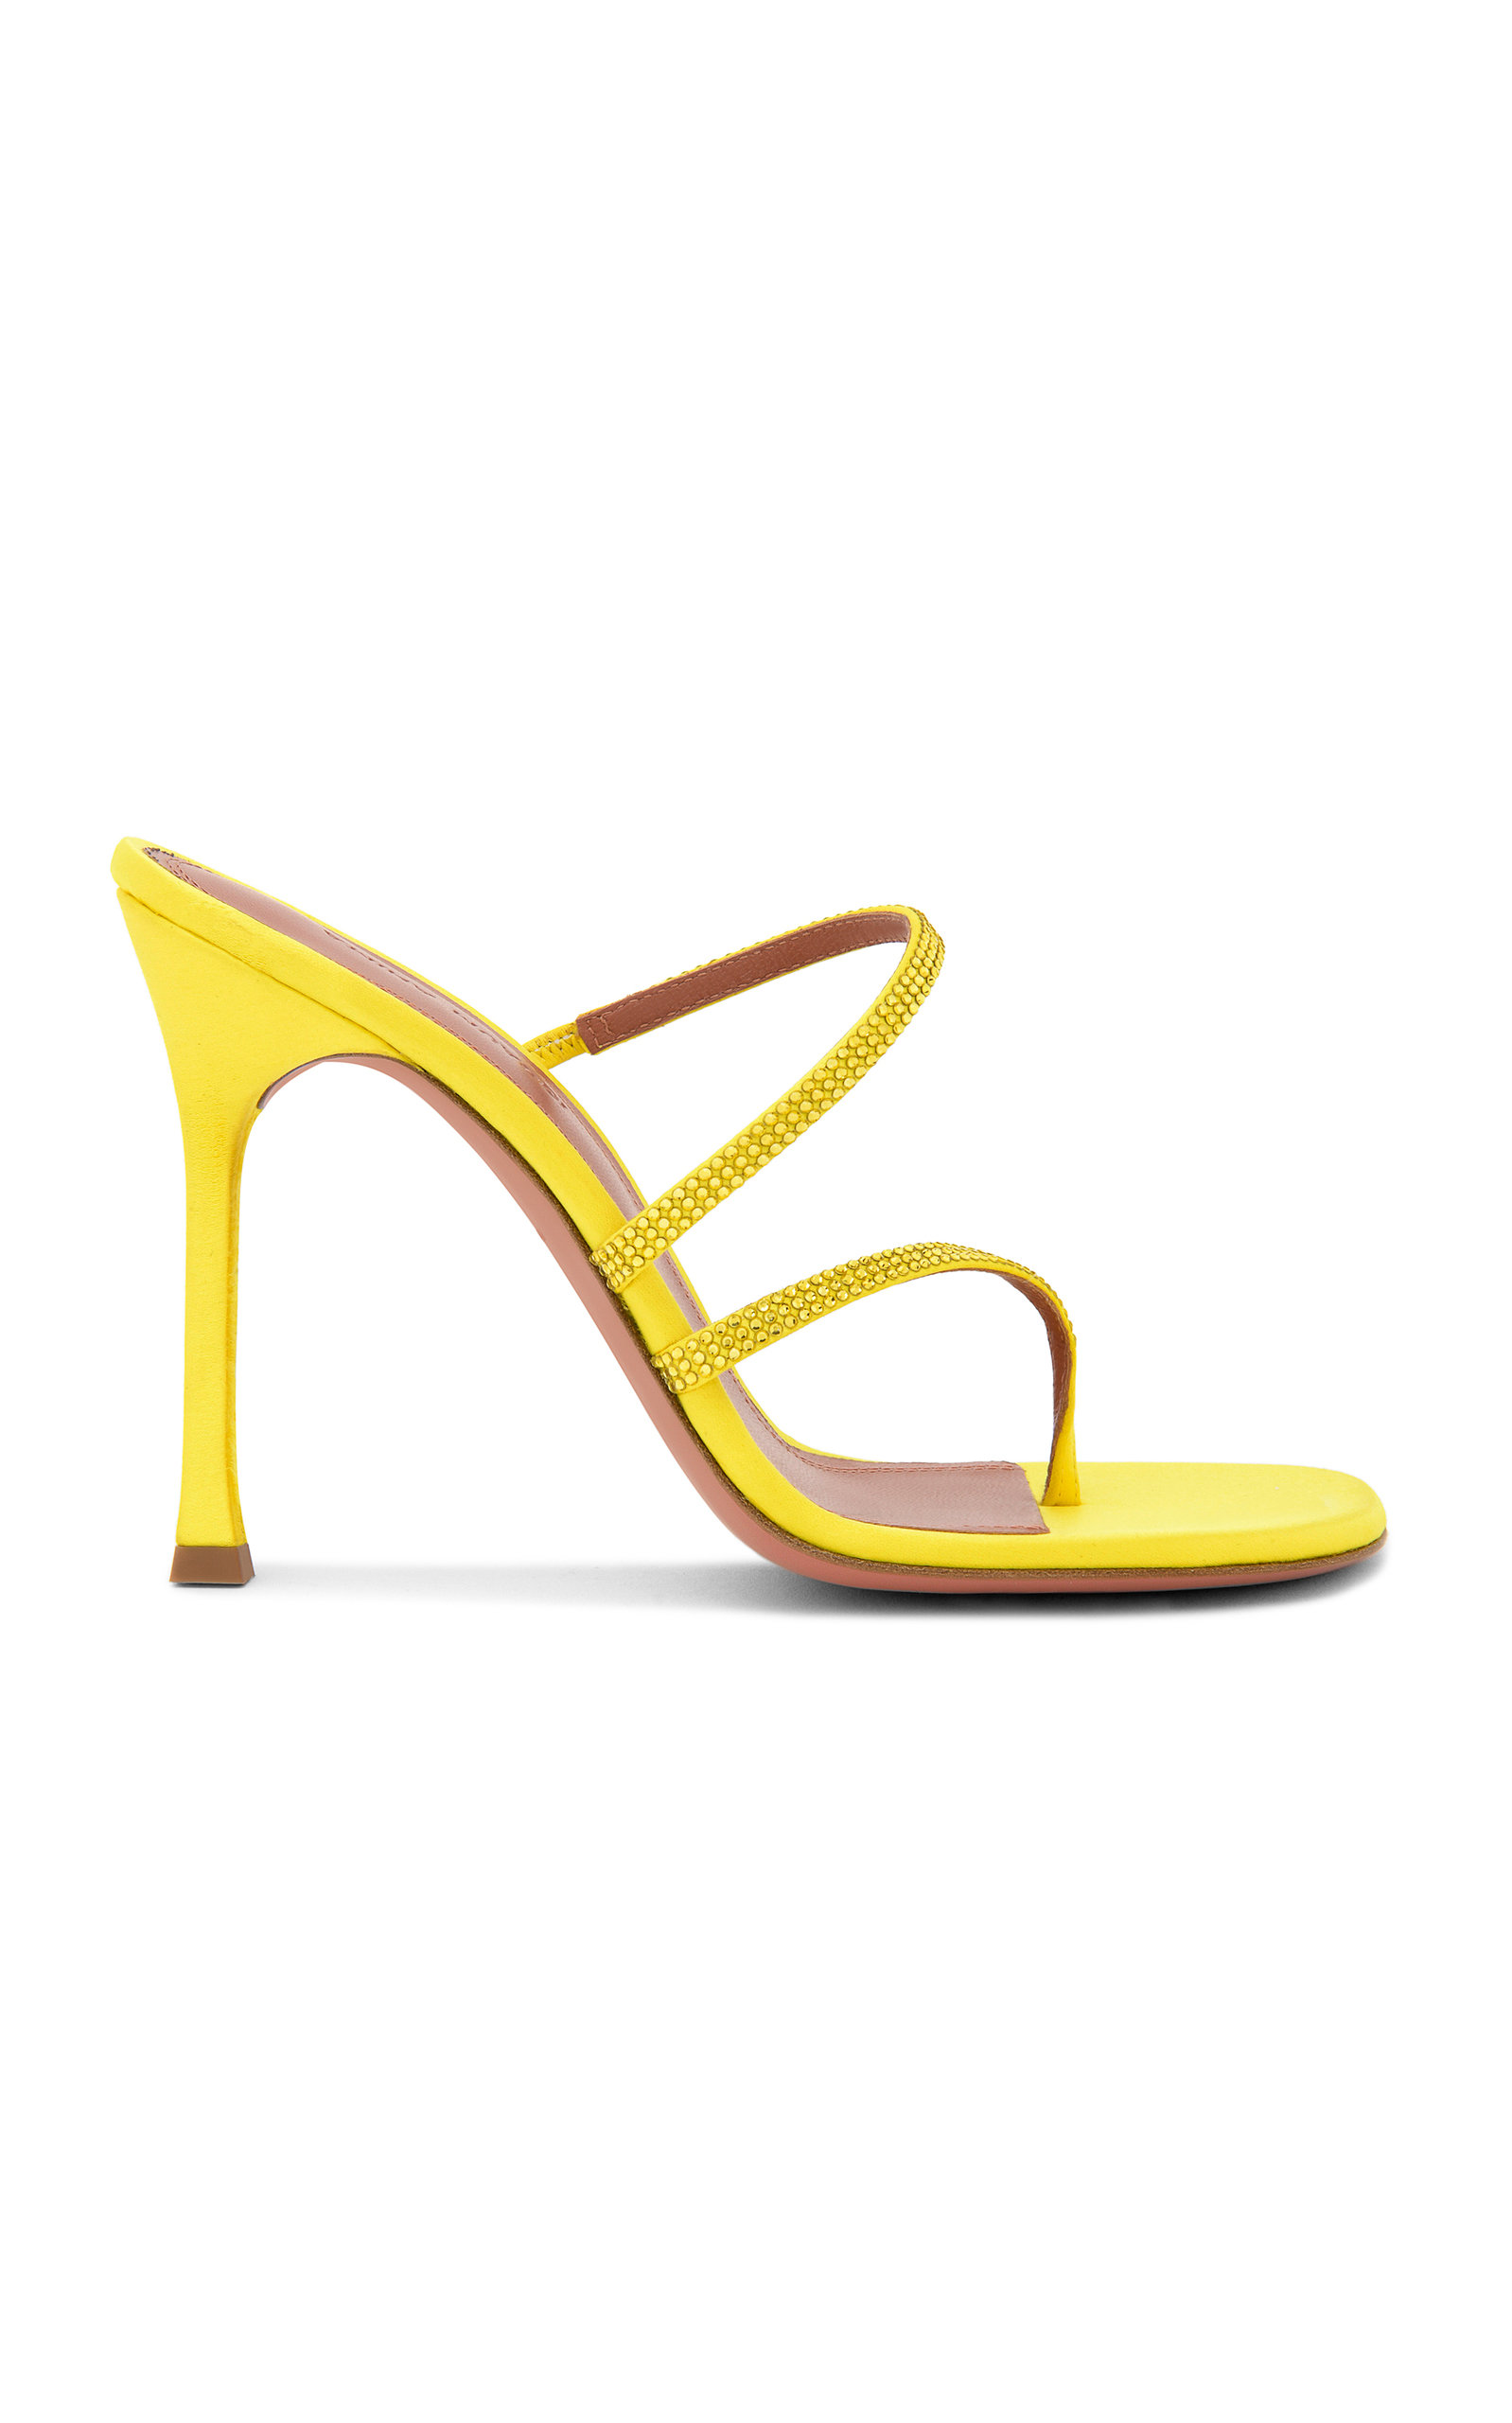 Amina Muaddi - Women's Ami Crystal-Embellished Satin Sandals - Yellow - IT 35 - Moda Operandi